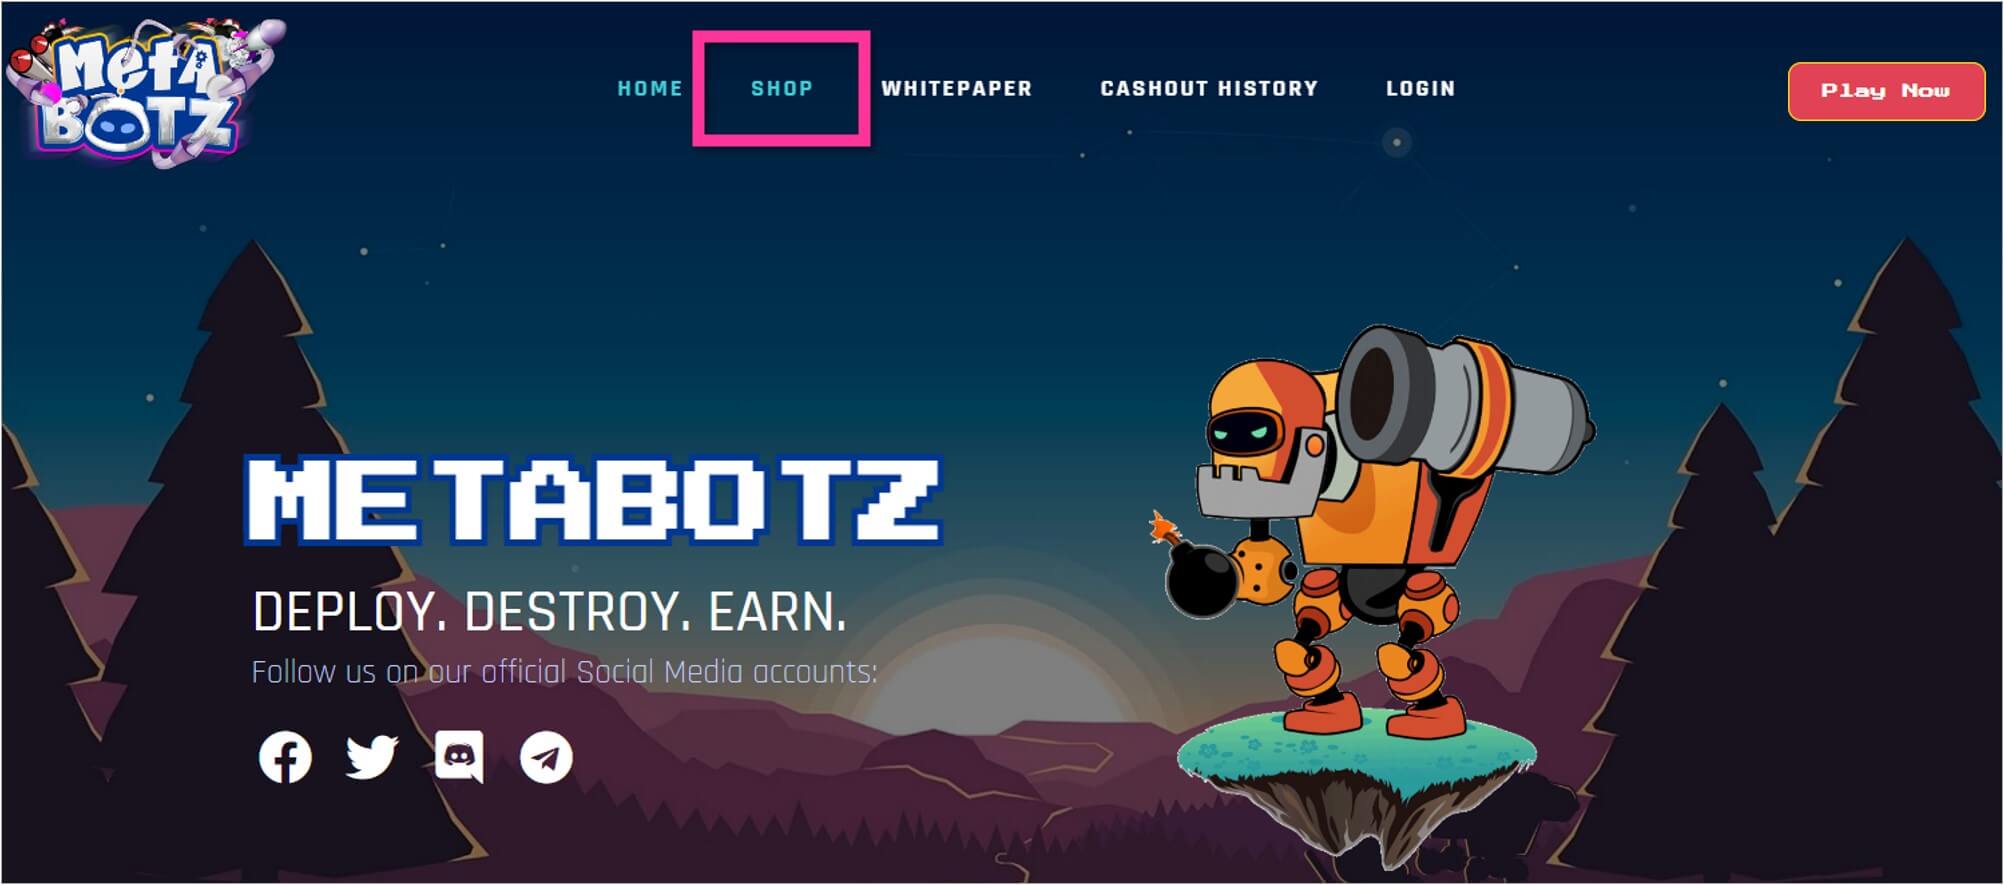 Metabotz公式サイト右上の「SHOP」を選択